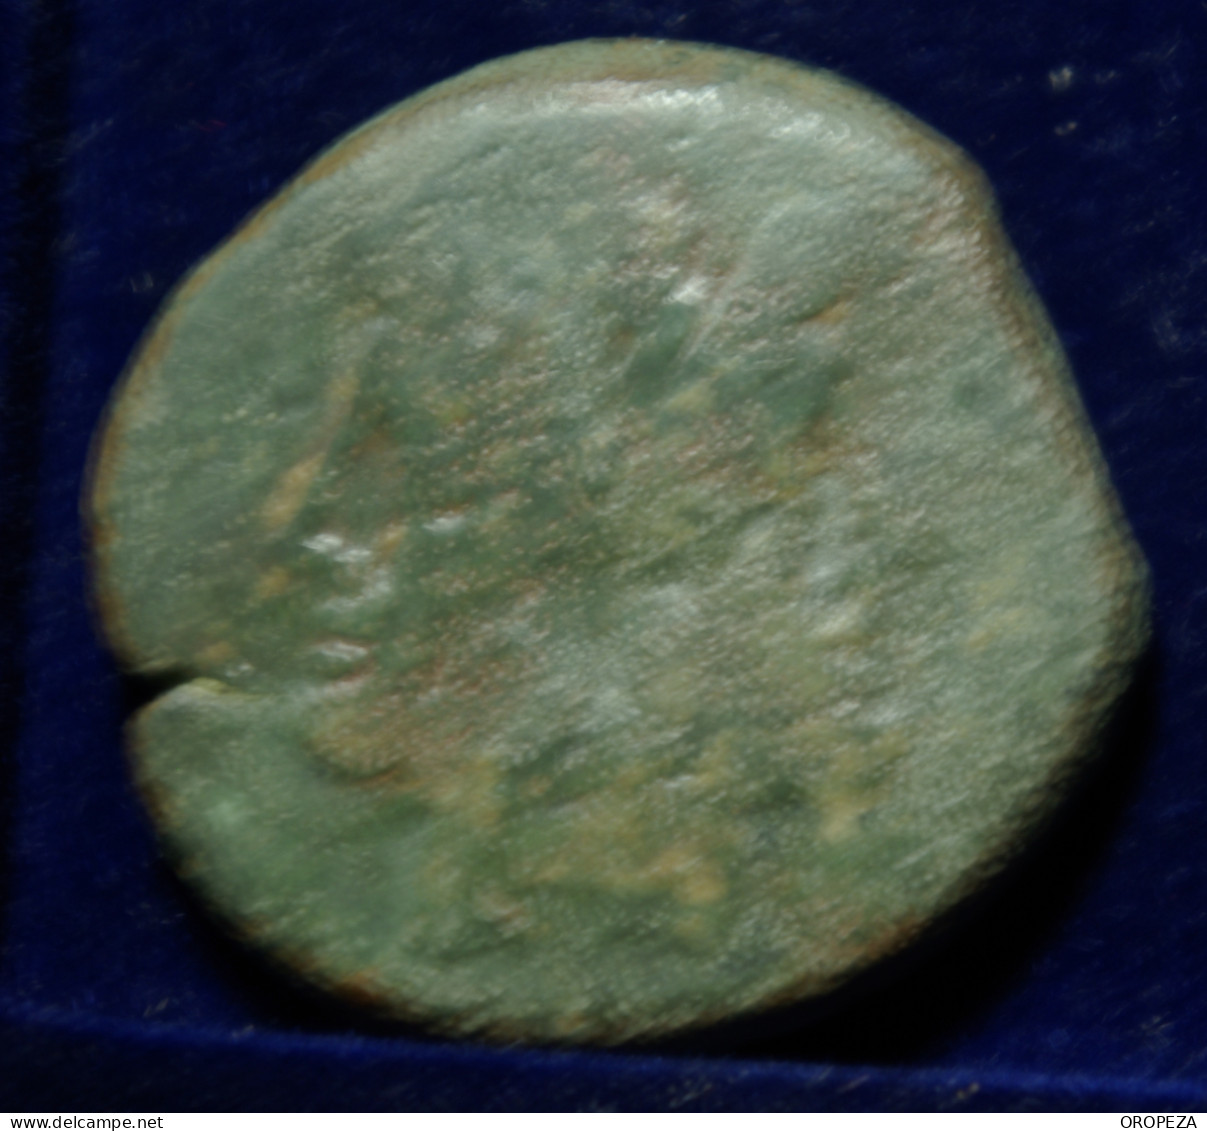 59 -  BONITO  AS  DE  JANO - SERIE SIMBOLOS -  GRIFO  ALADO - MBC - Republic (280 BC To 27 BC)